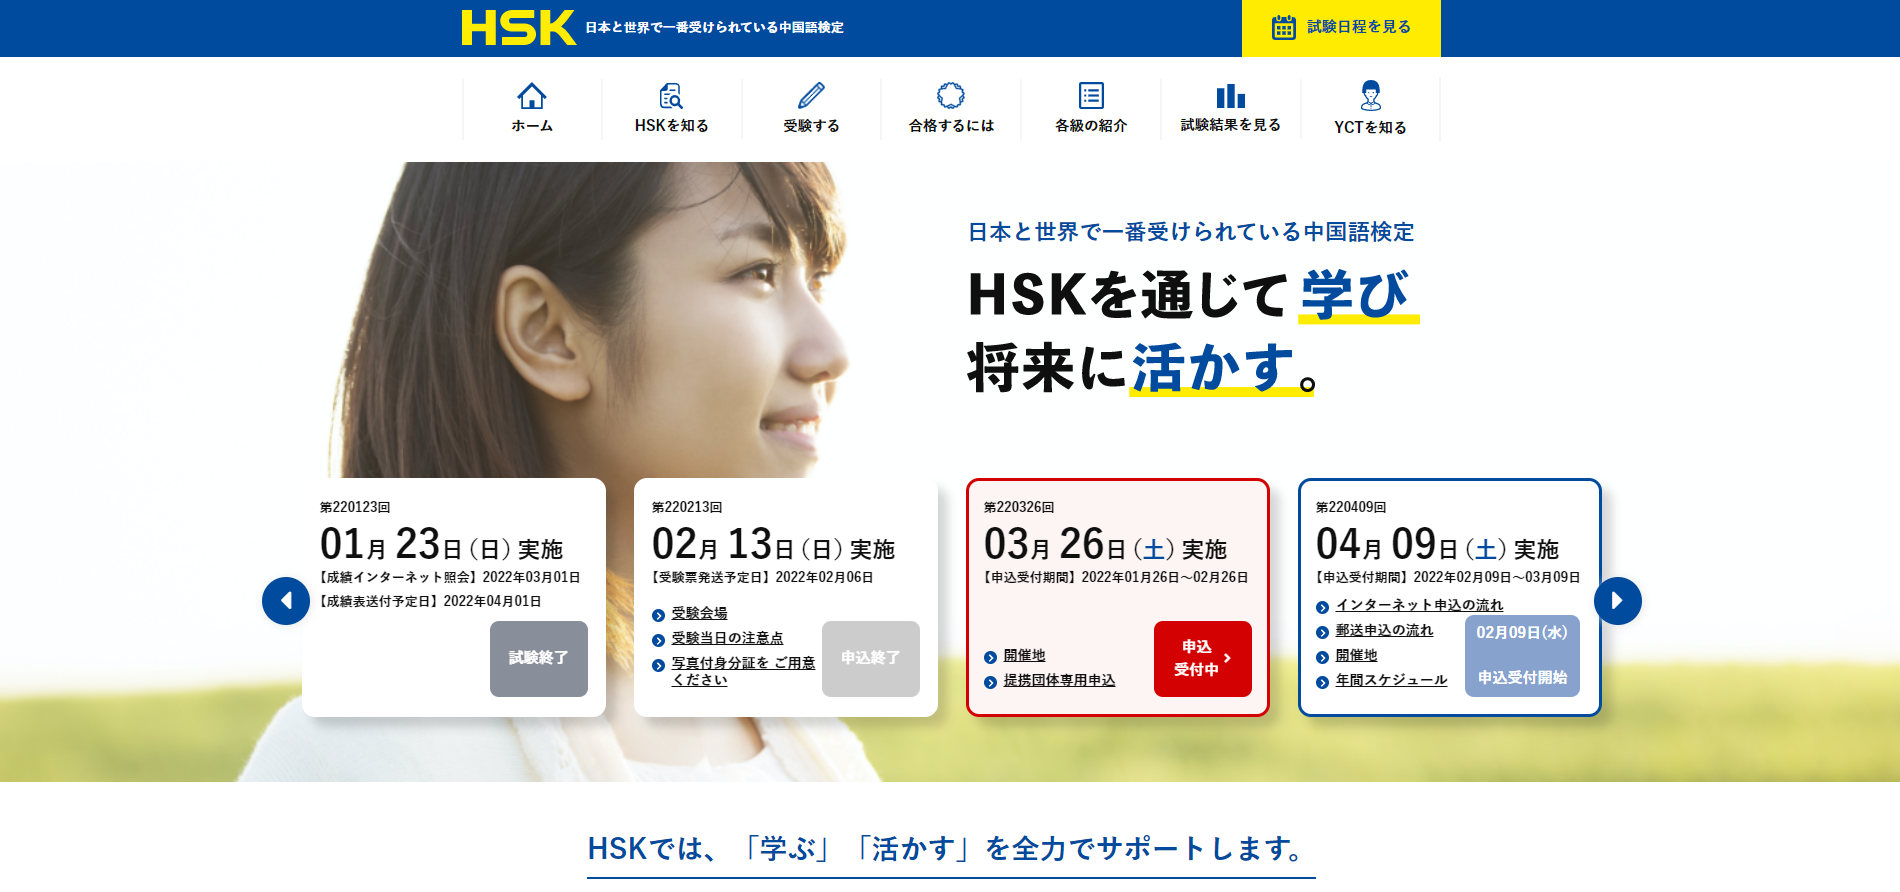 HSK対策：オンライン留学やオンラインセミナーをチェック